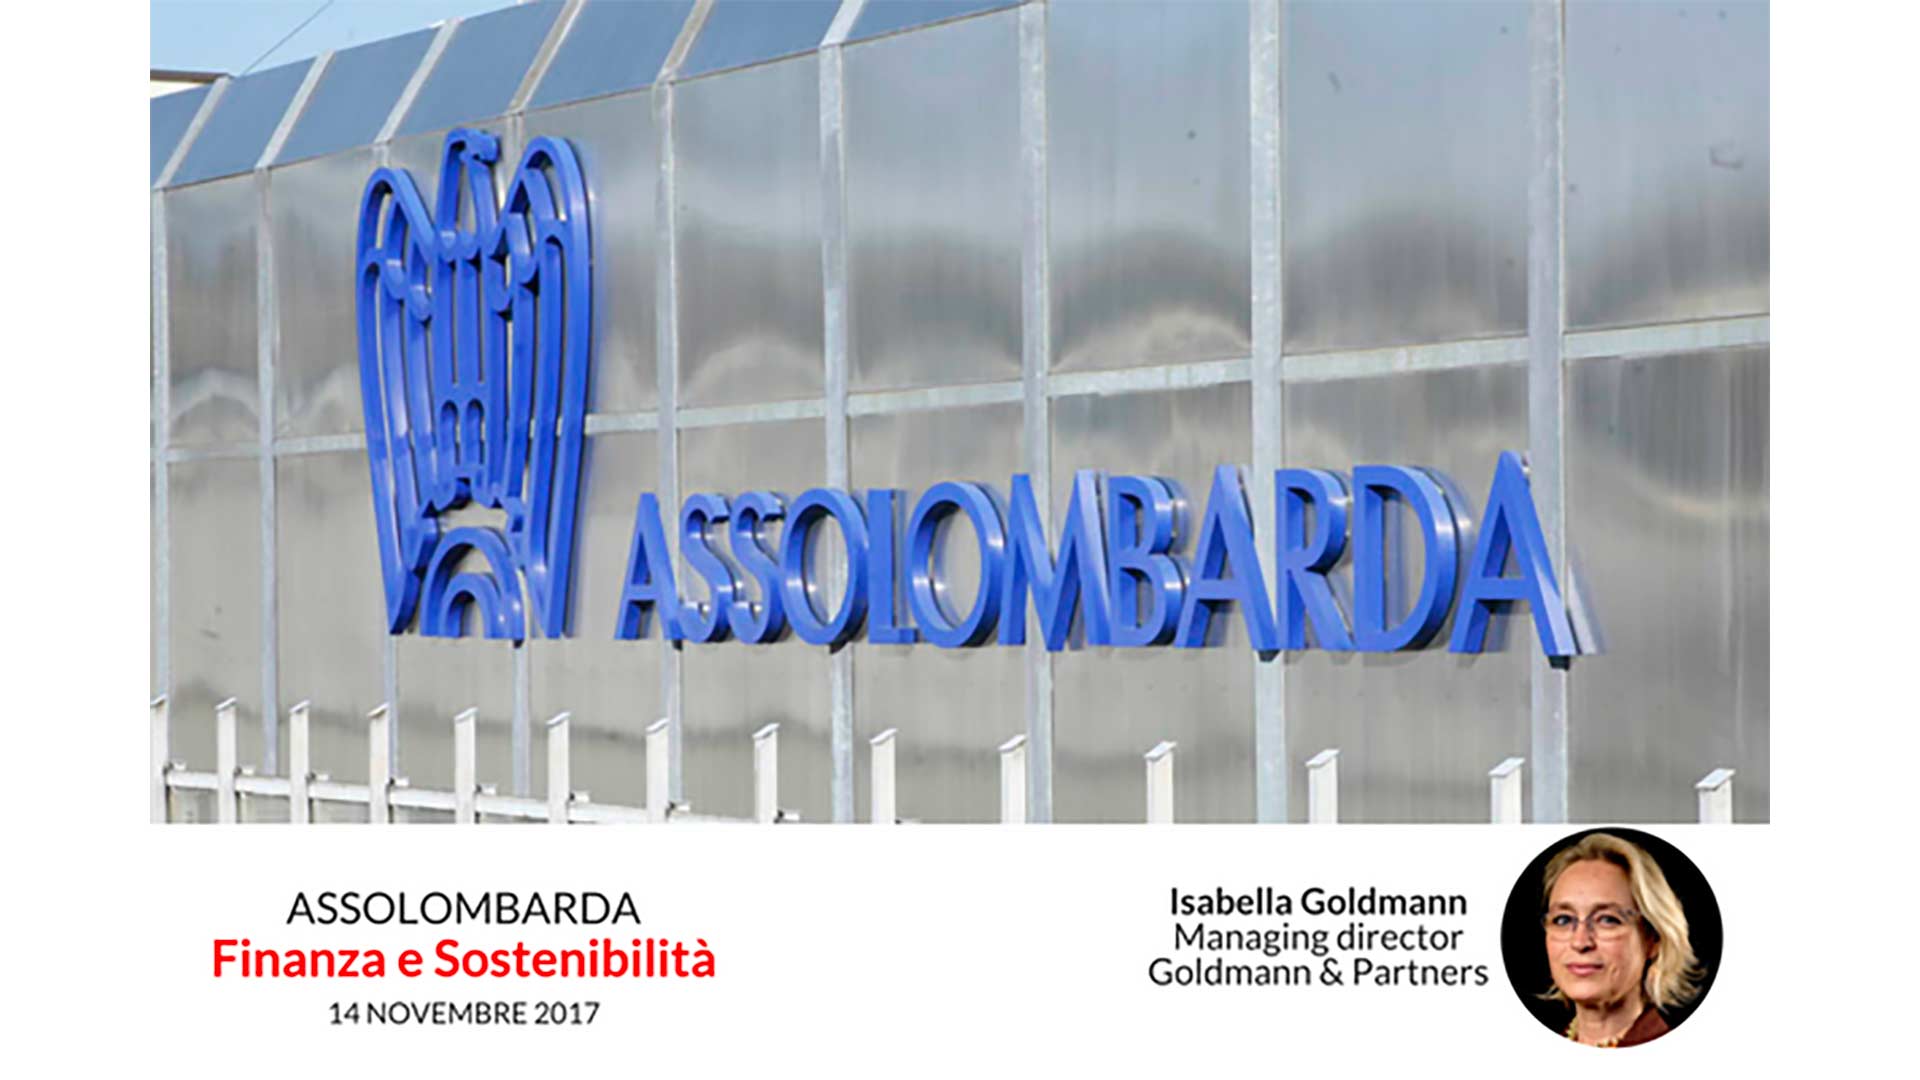 Goldman&Partners finanza e sostenibilità